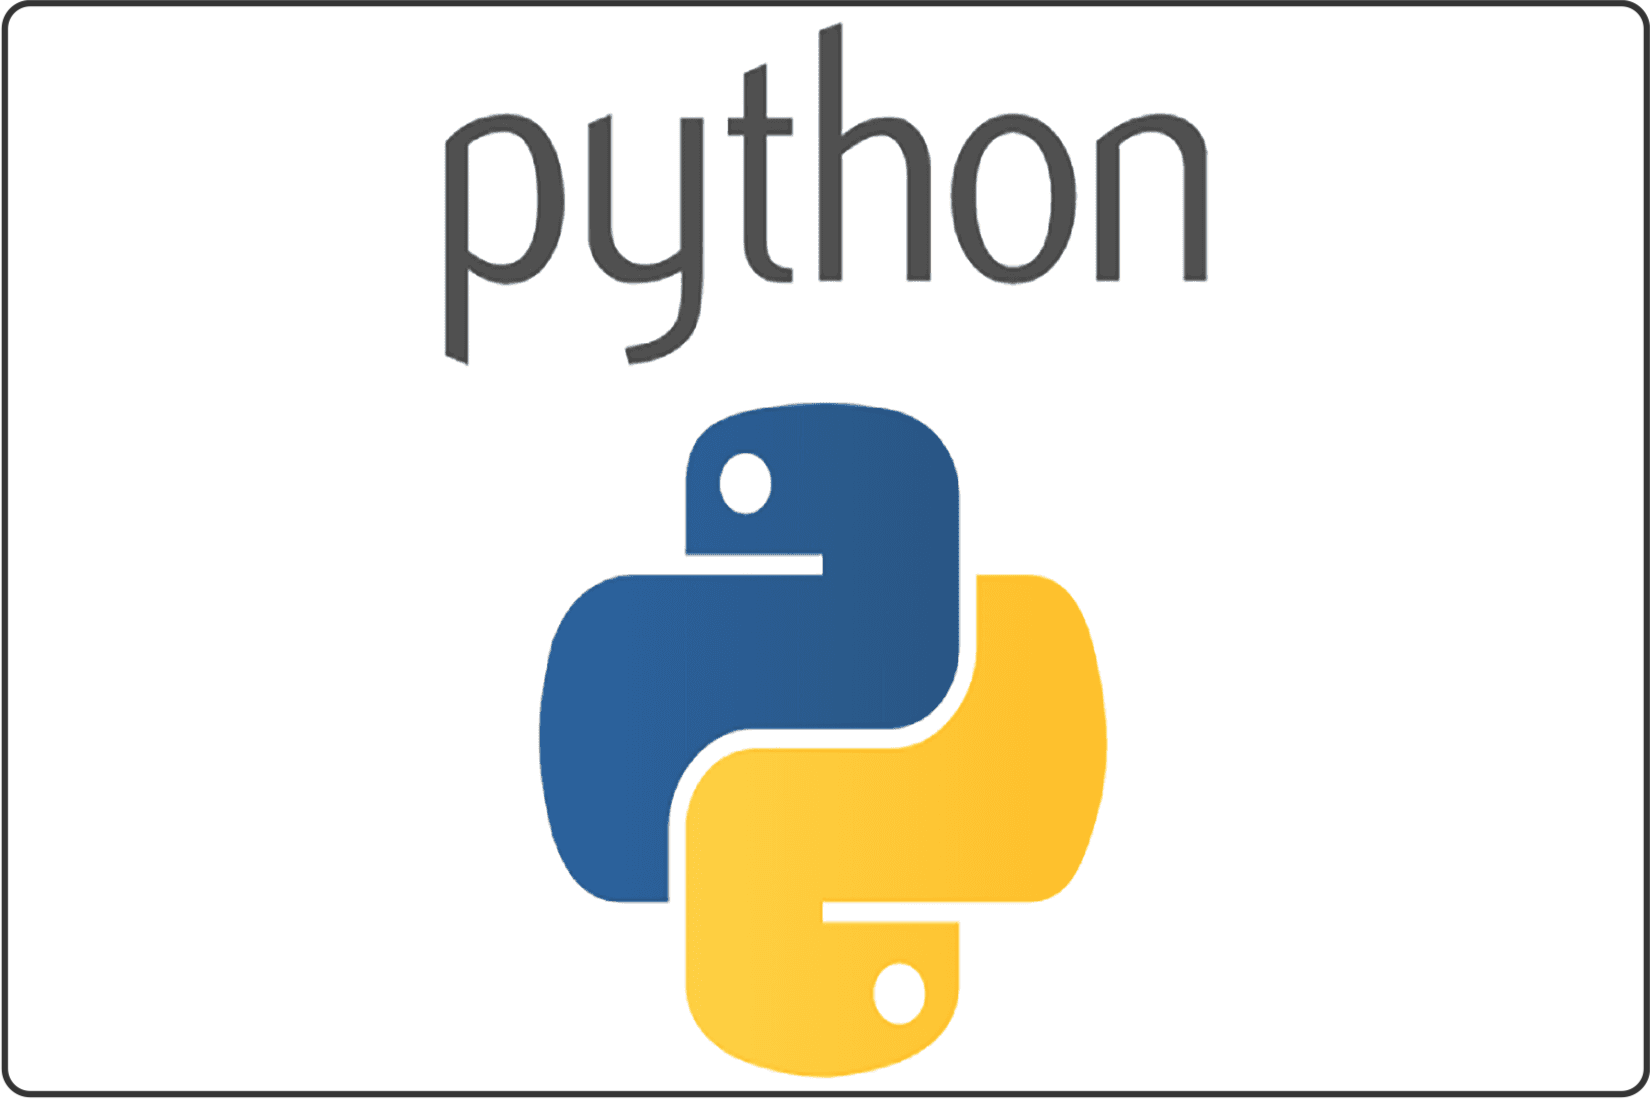 Язык phyton. Значок Python. Питон программирование значок. Значок питона язык. Питон язык программирования логотип.